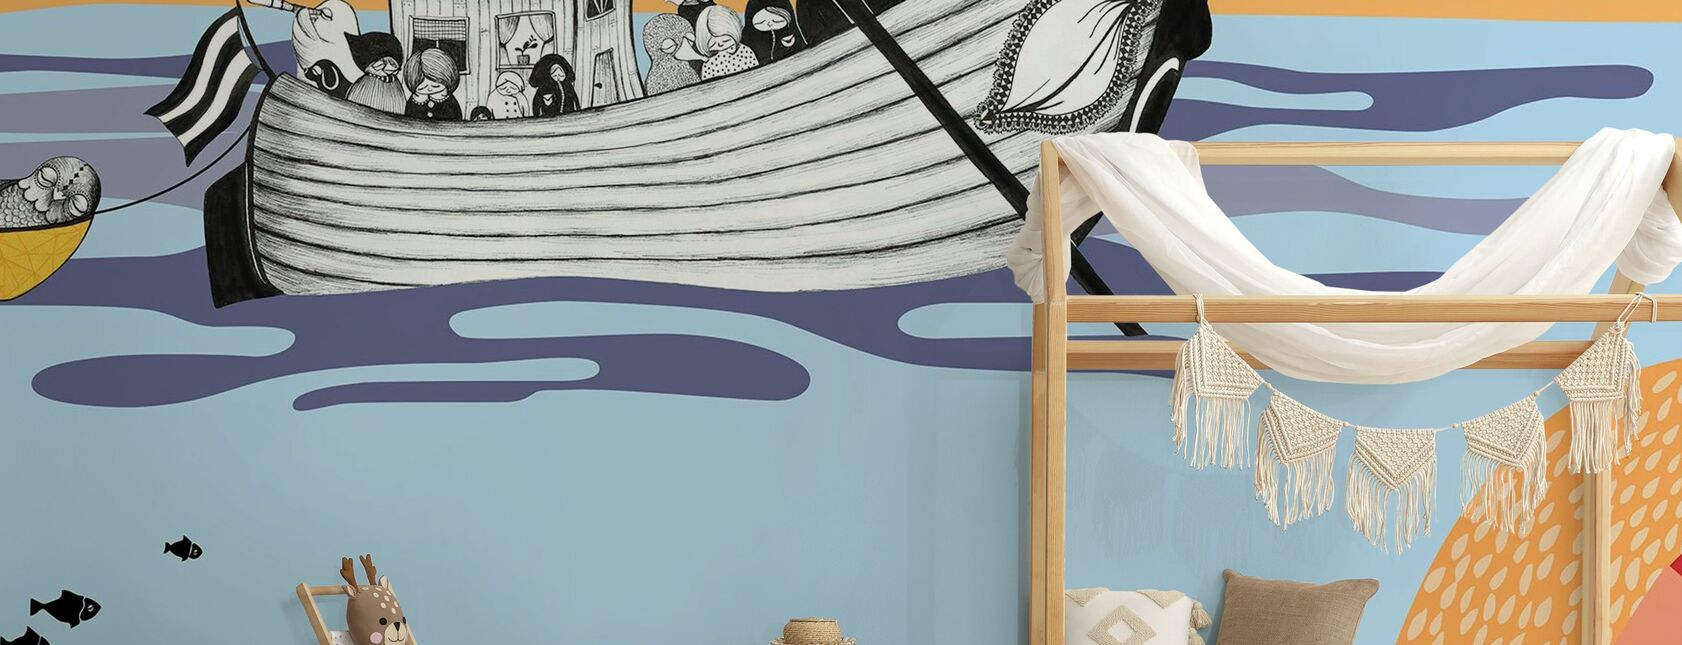 Hornstull Boat - Wallpaper - Kids Room